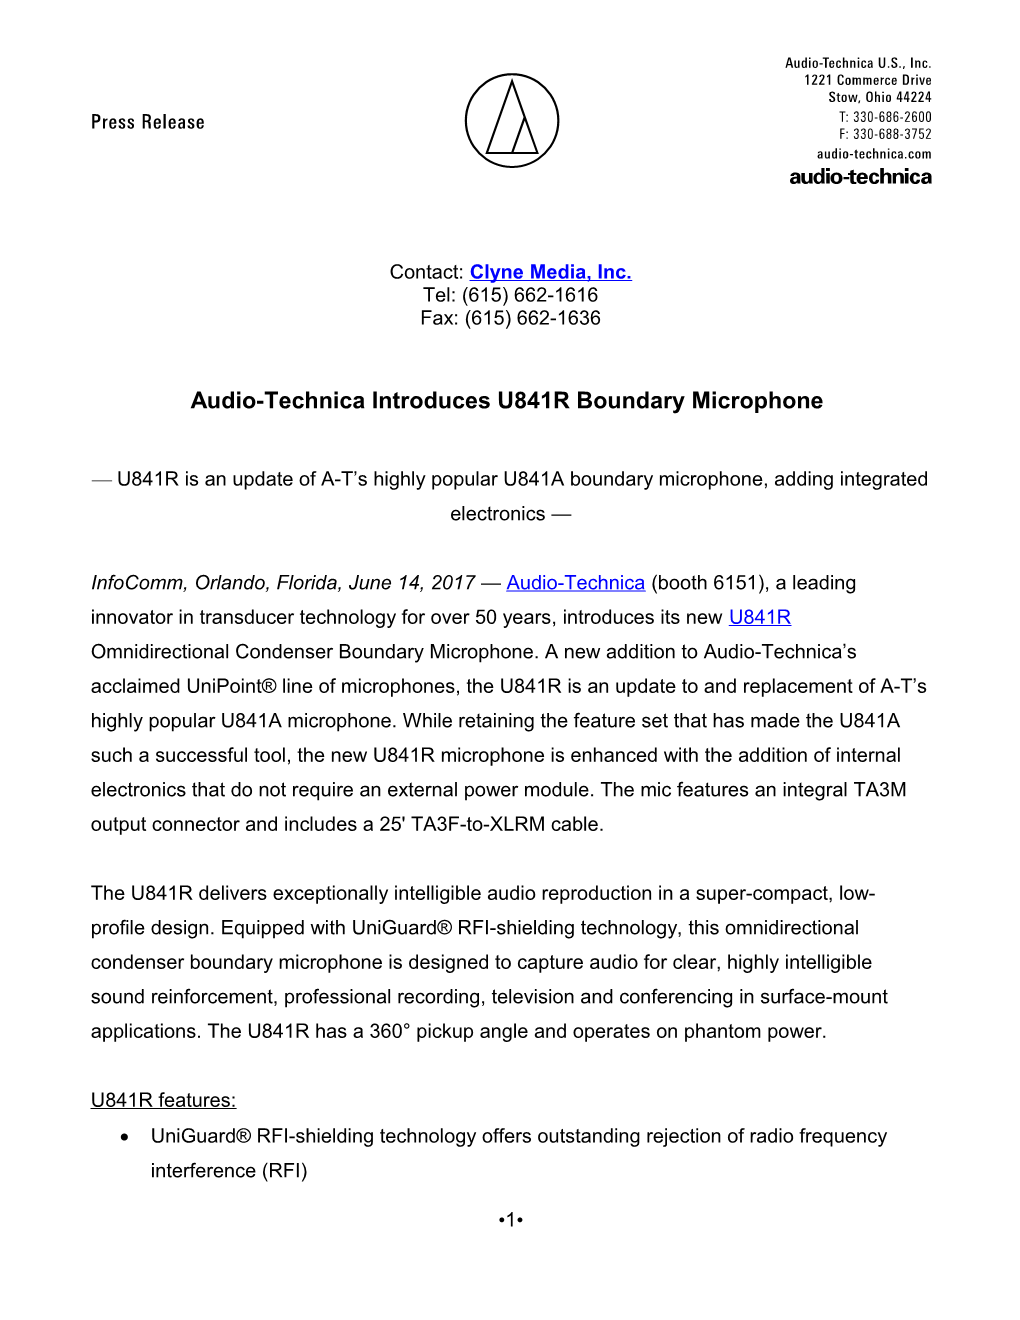 Audio-Technica Introduces U841R Boundary Microphone